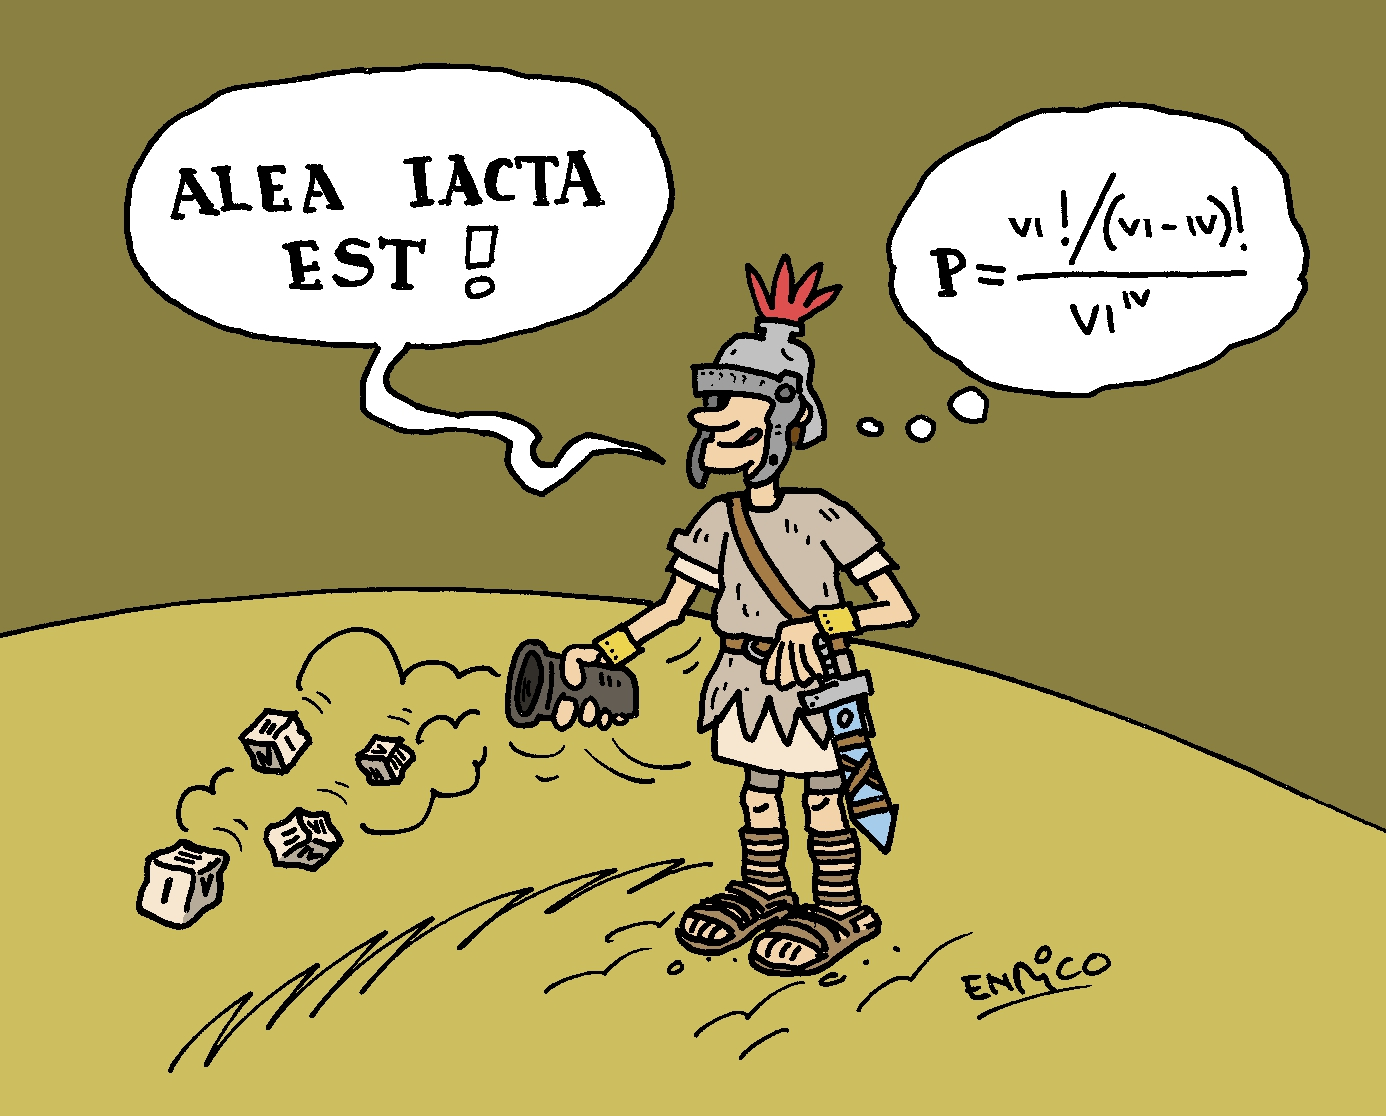 'Alea Acta Est' by Enrico Chavez